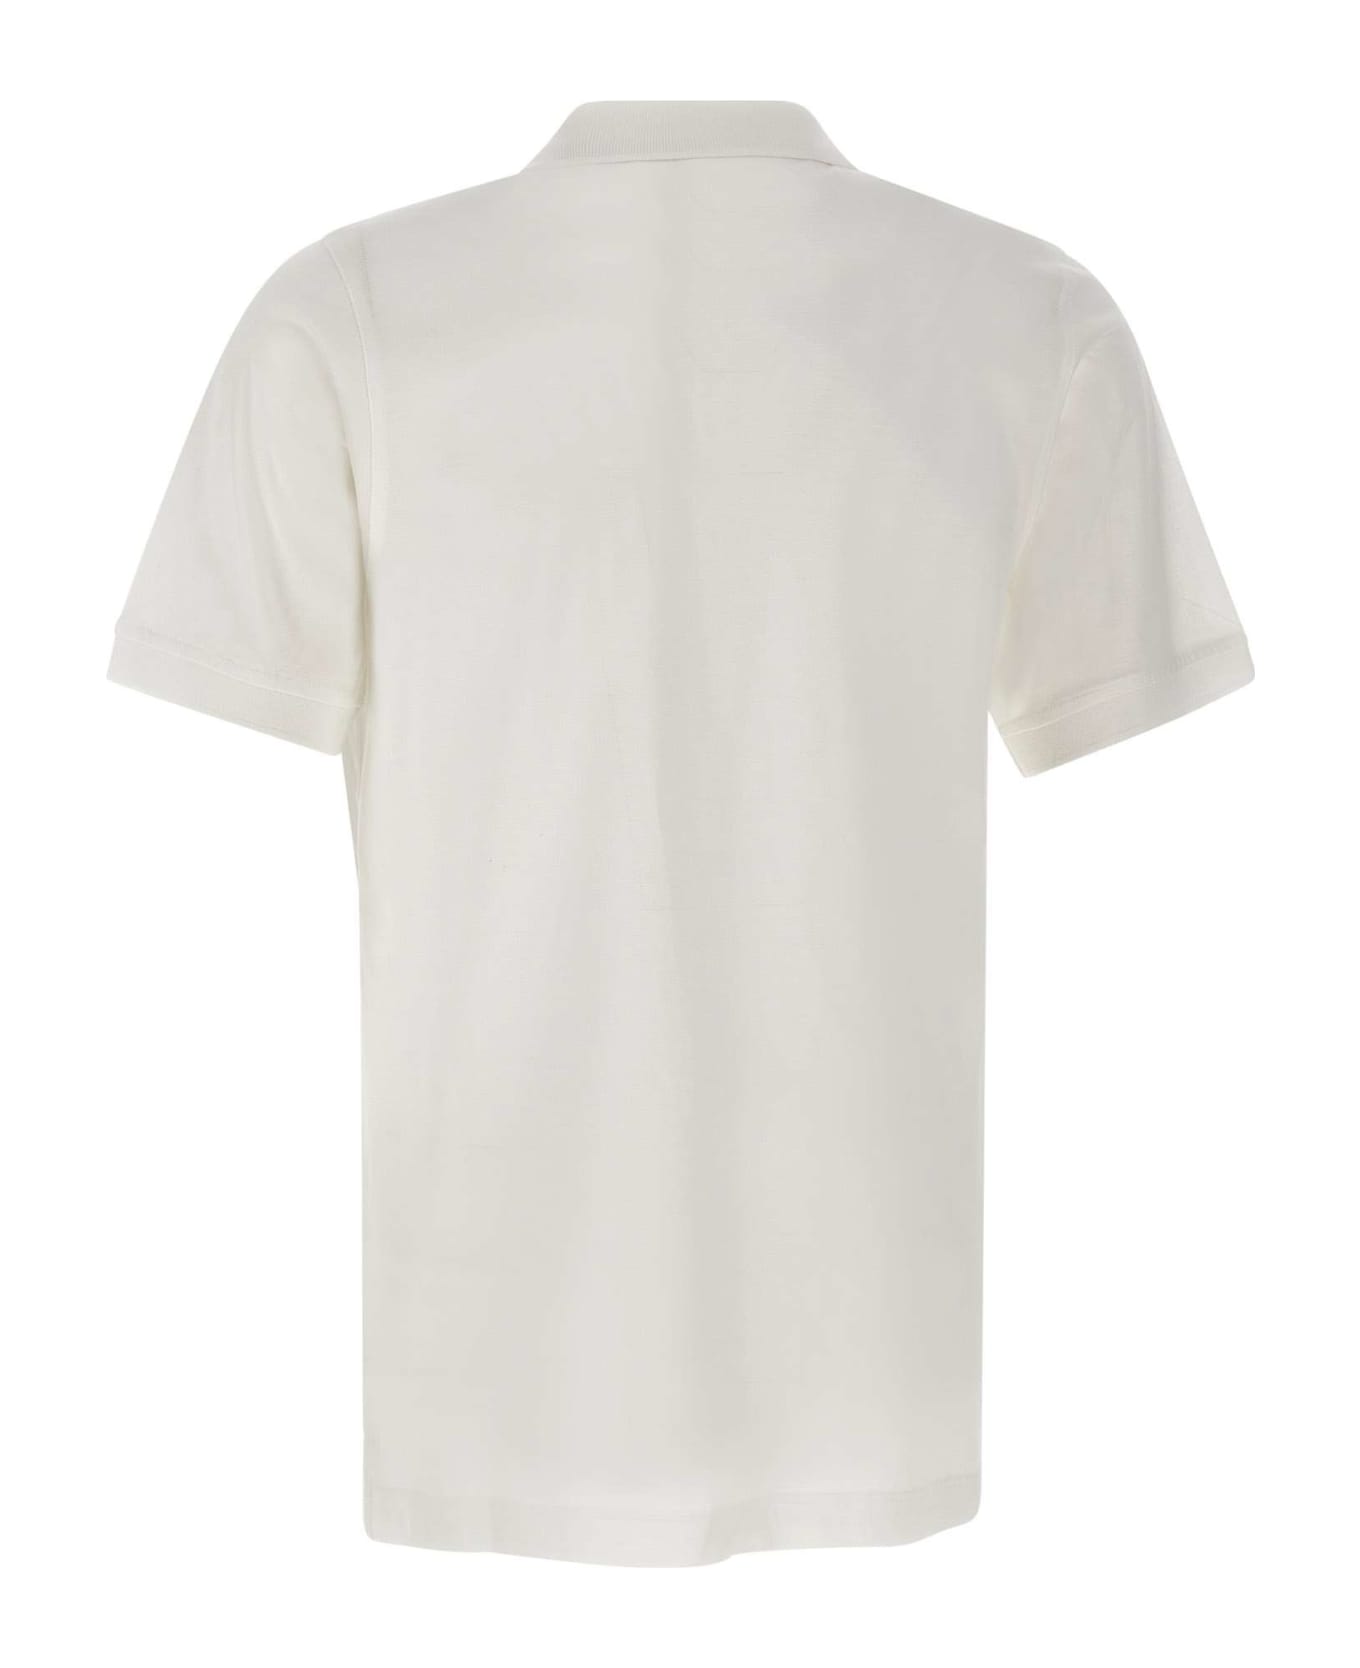 Kiton Ultrafine Cotton Polo Shirt - WHITE